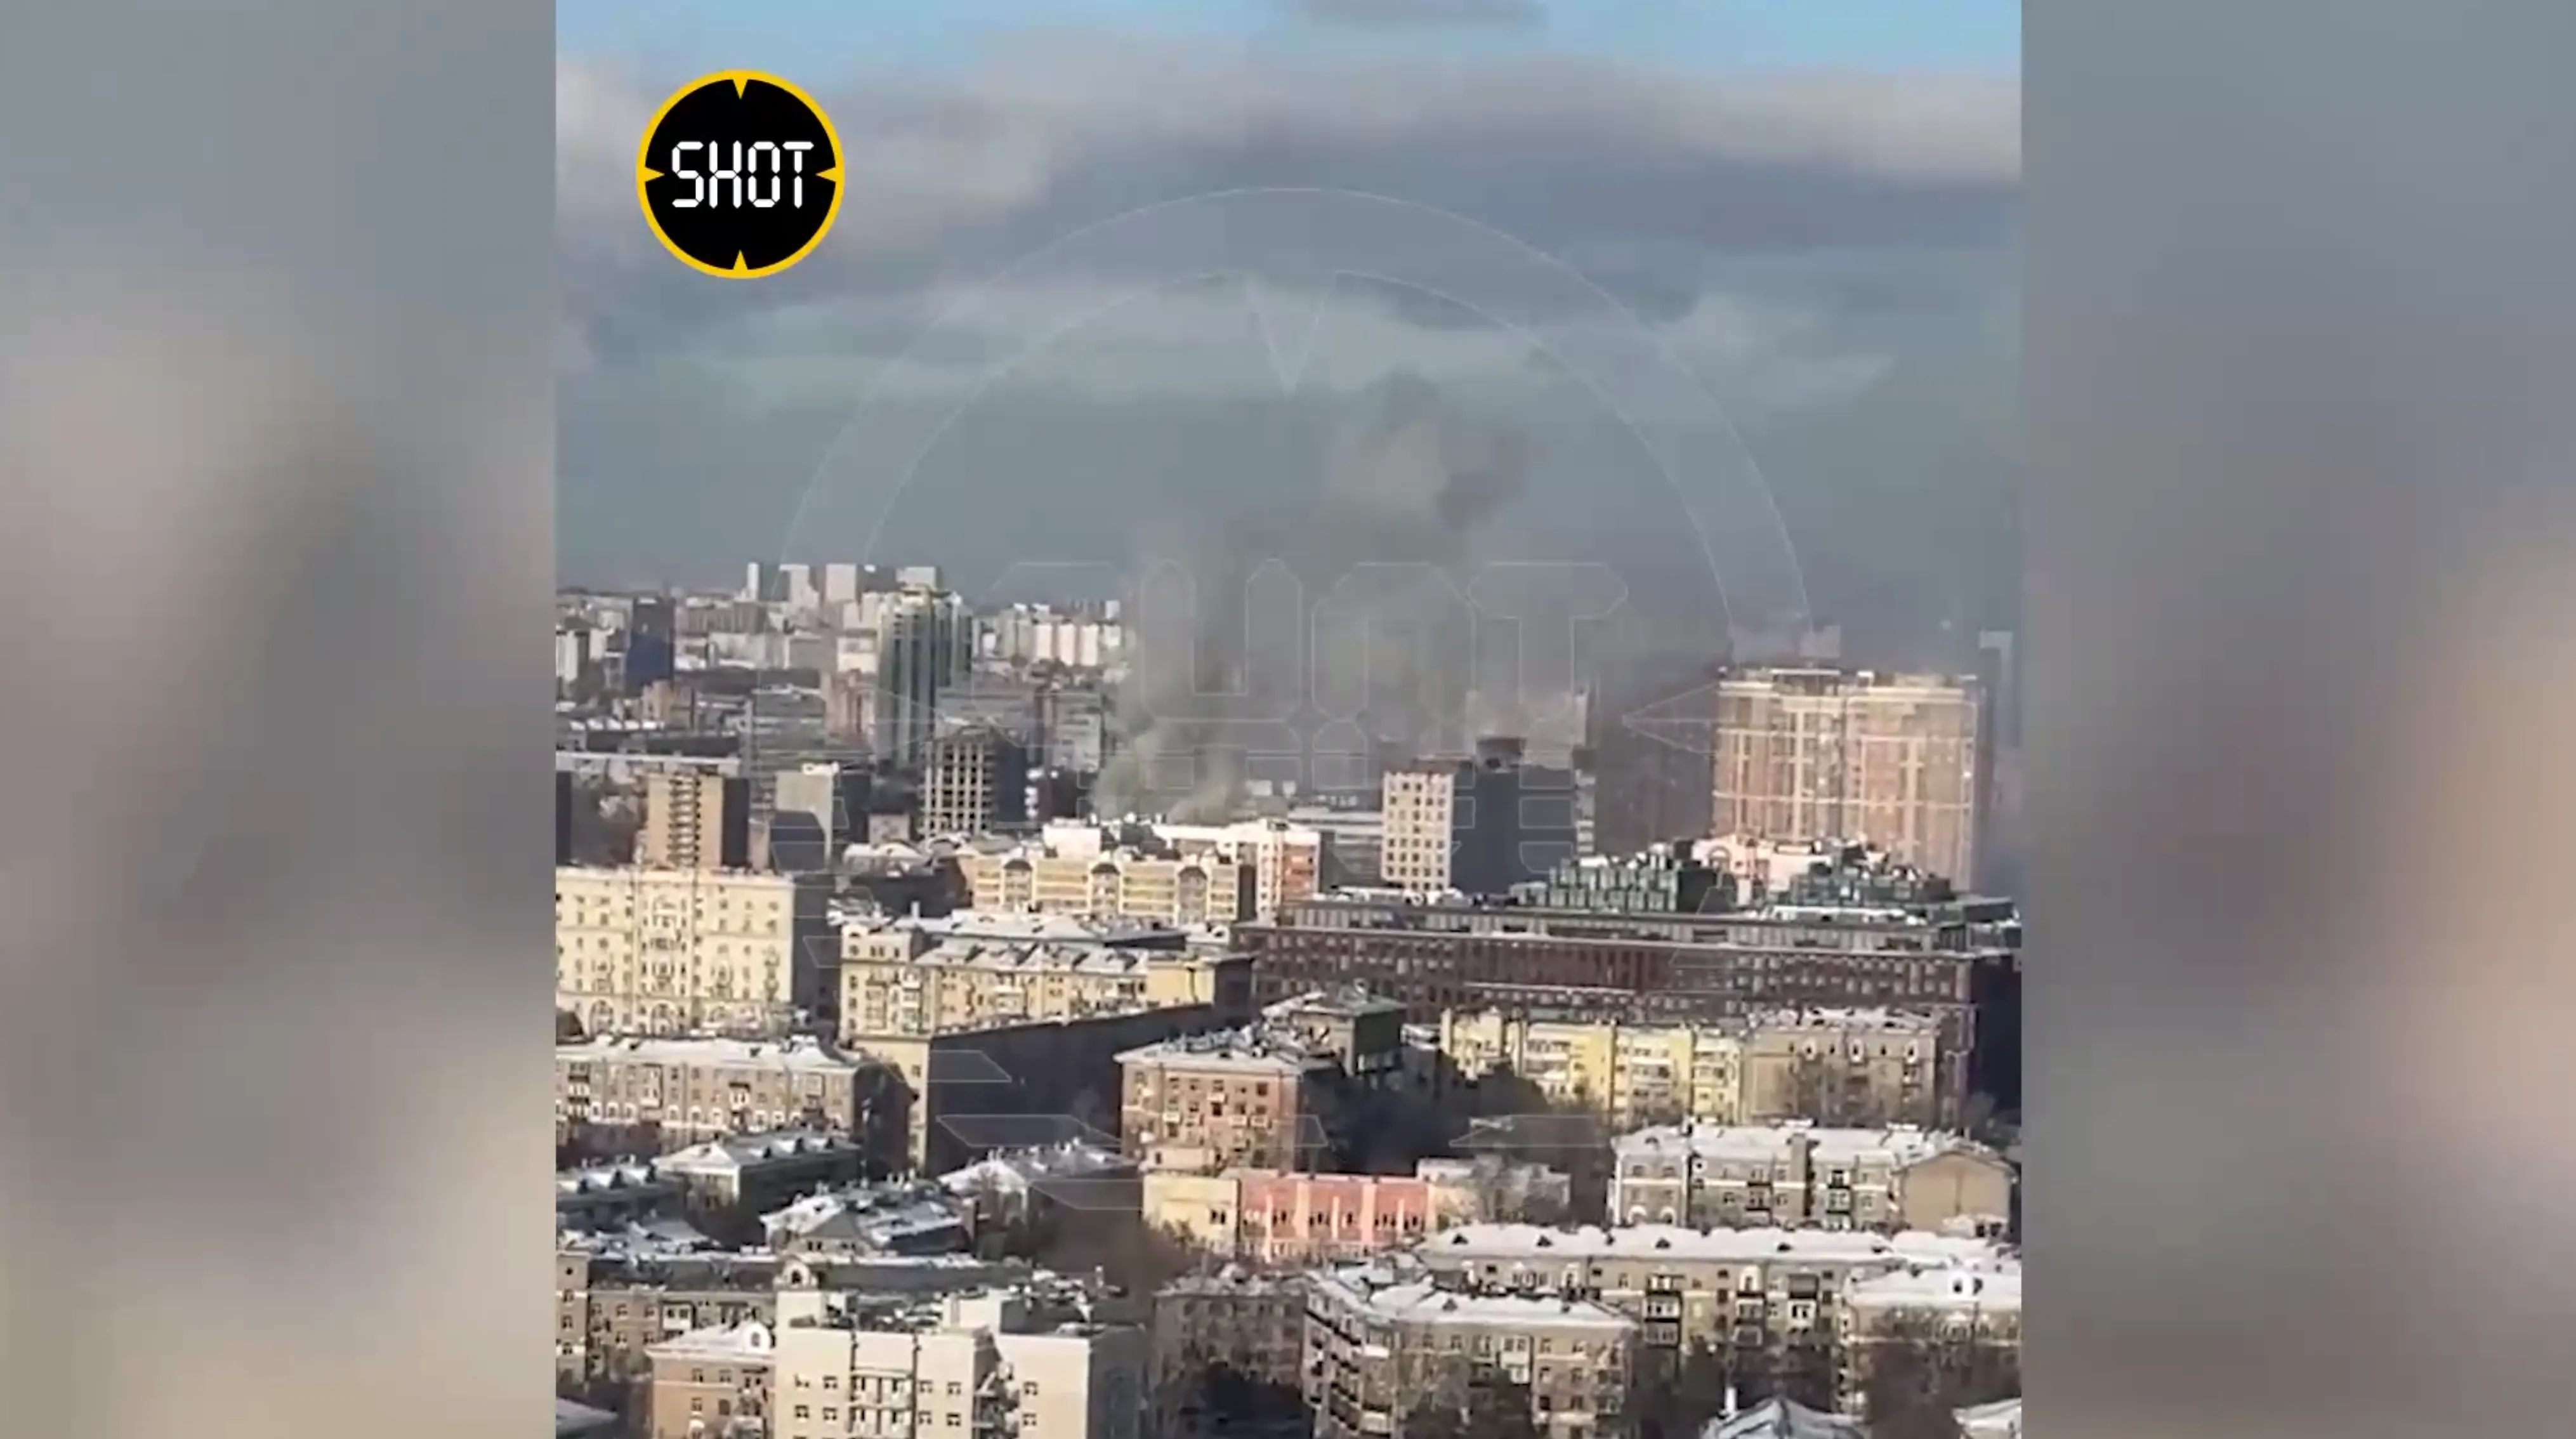 Шестиэтажный дом горит в районе Аэропорт в Москве